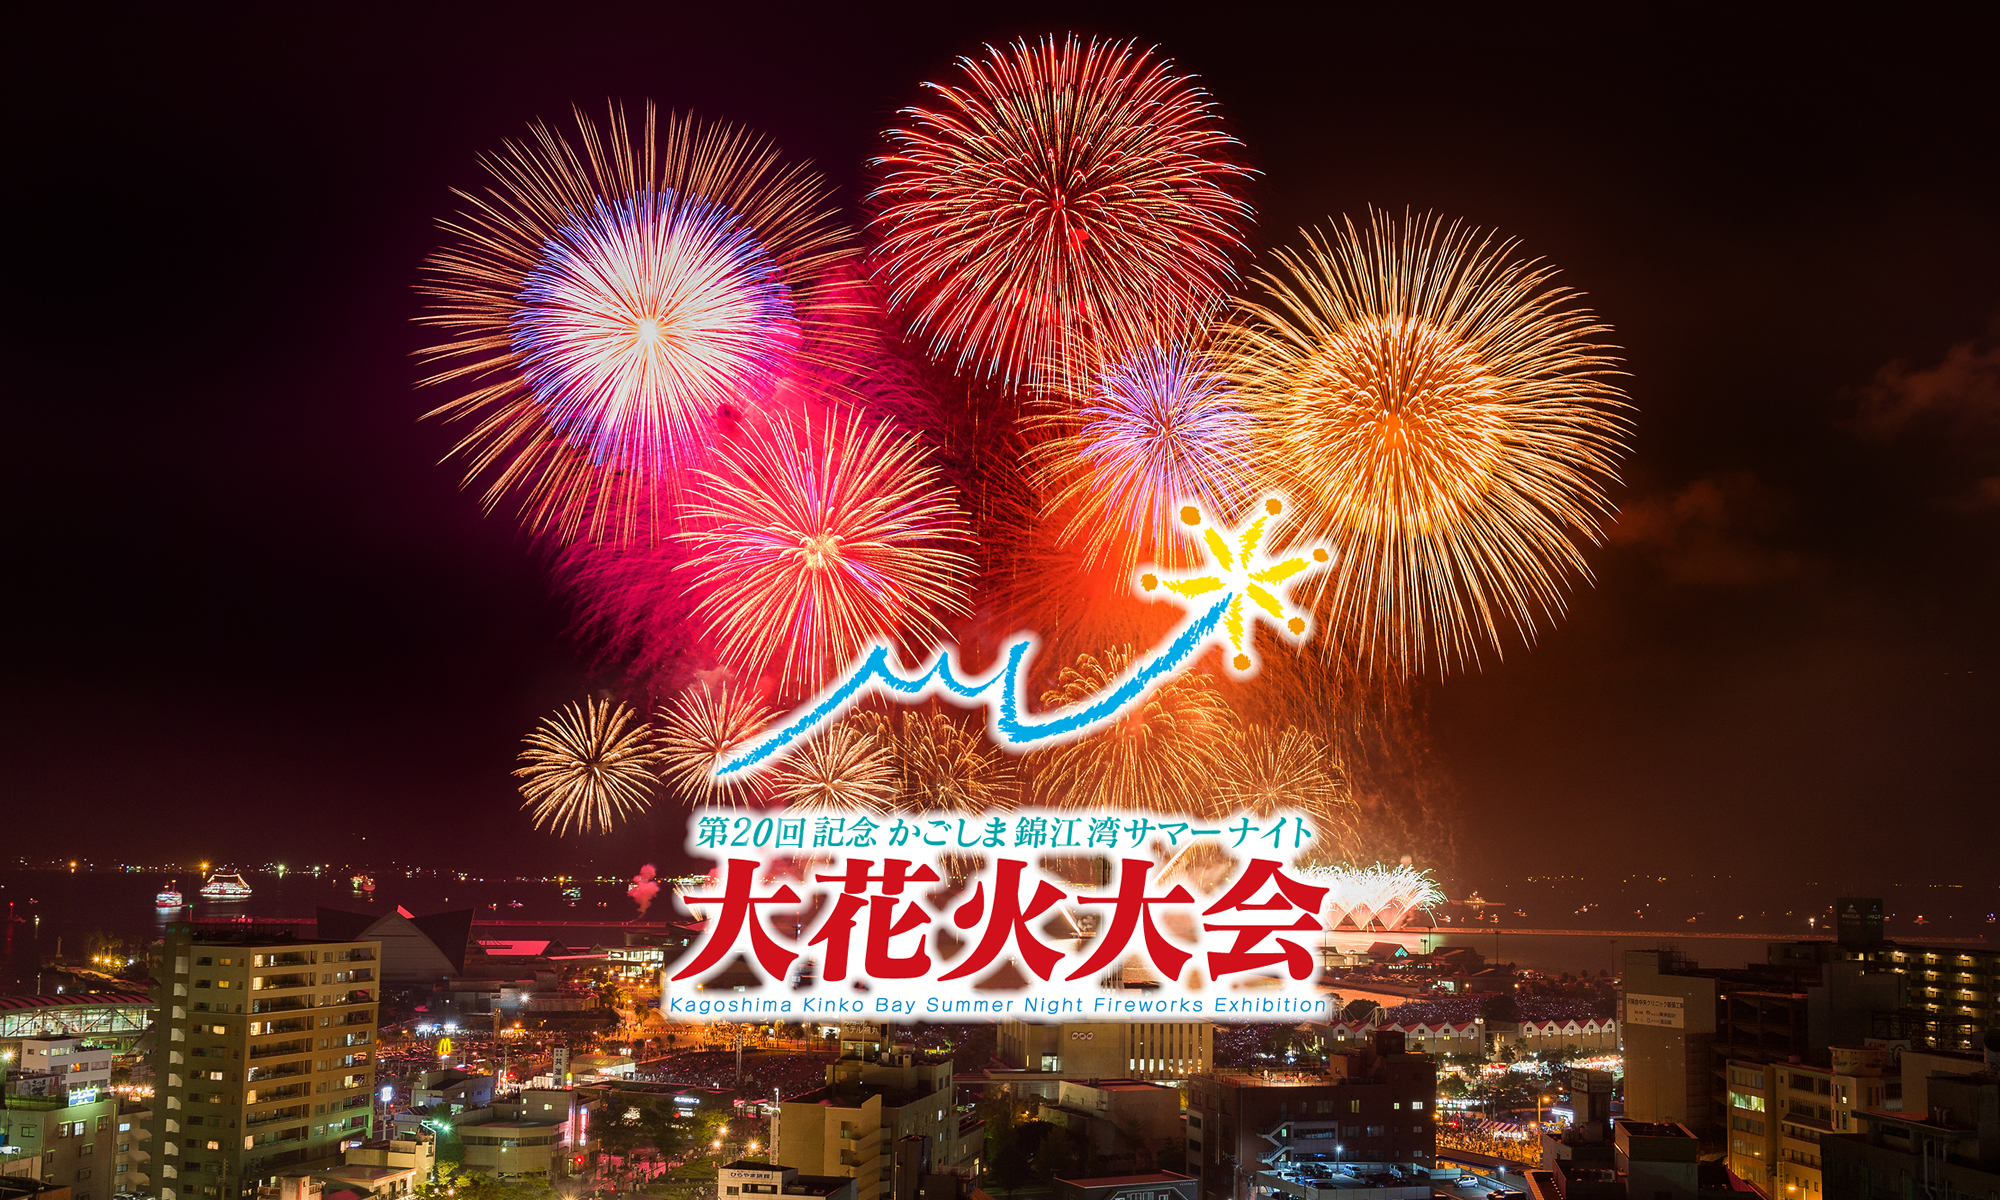 第20回記念 かごしま錦江湾サマーナイト大花火大会 公式サイト